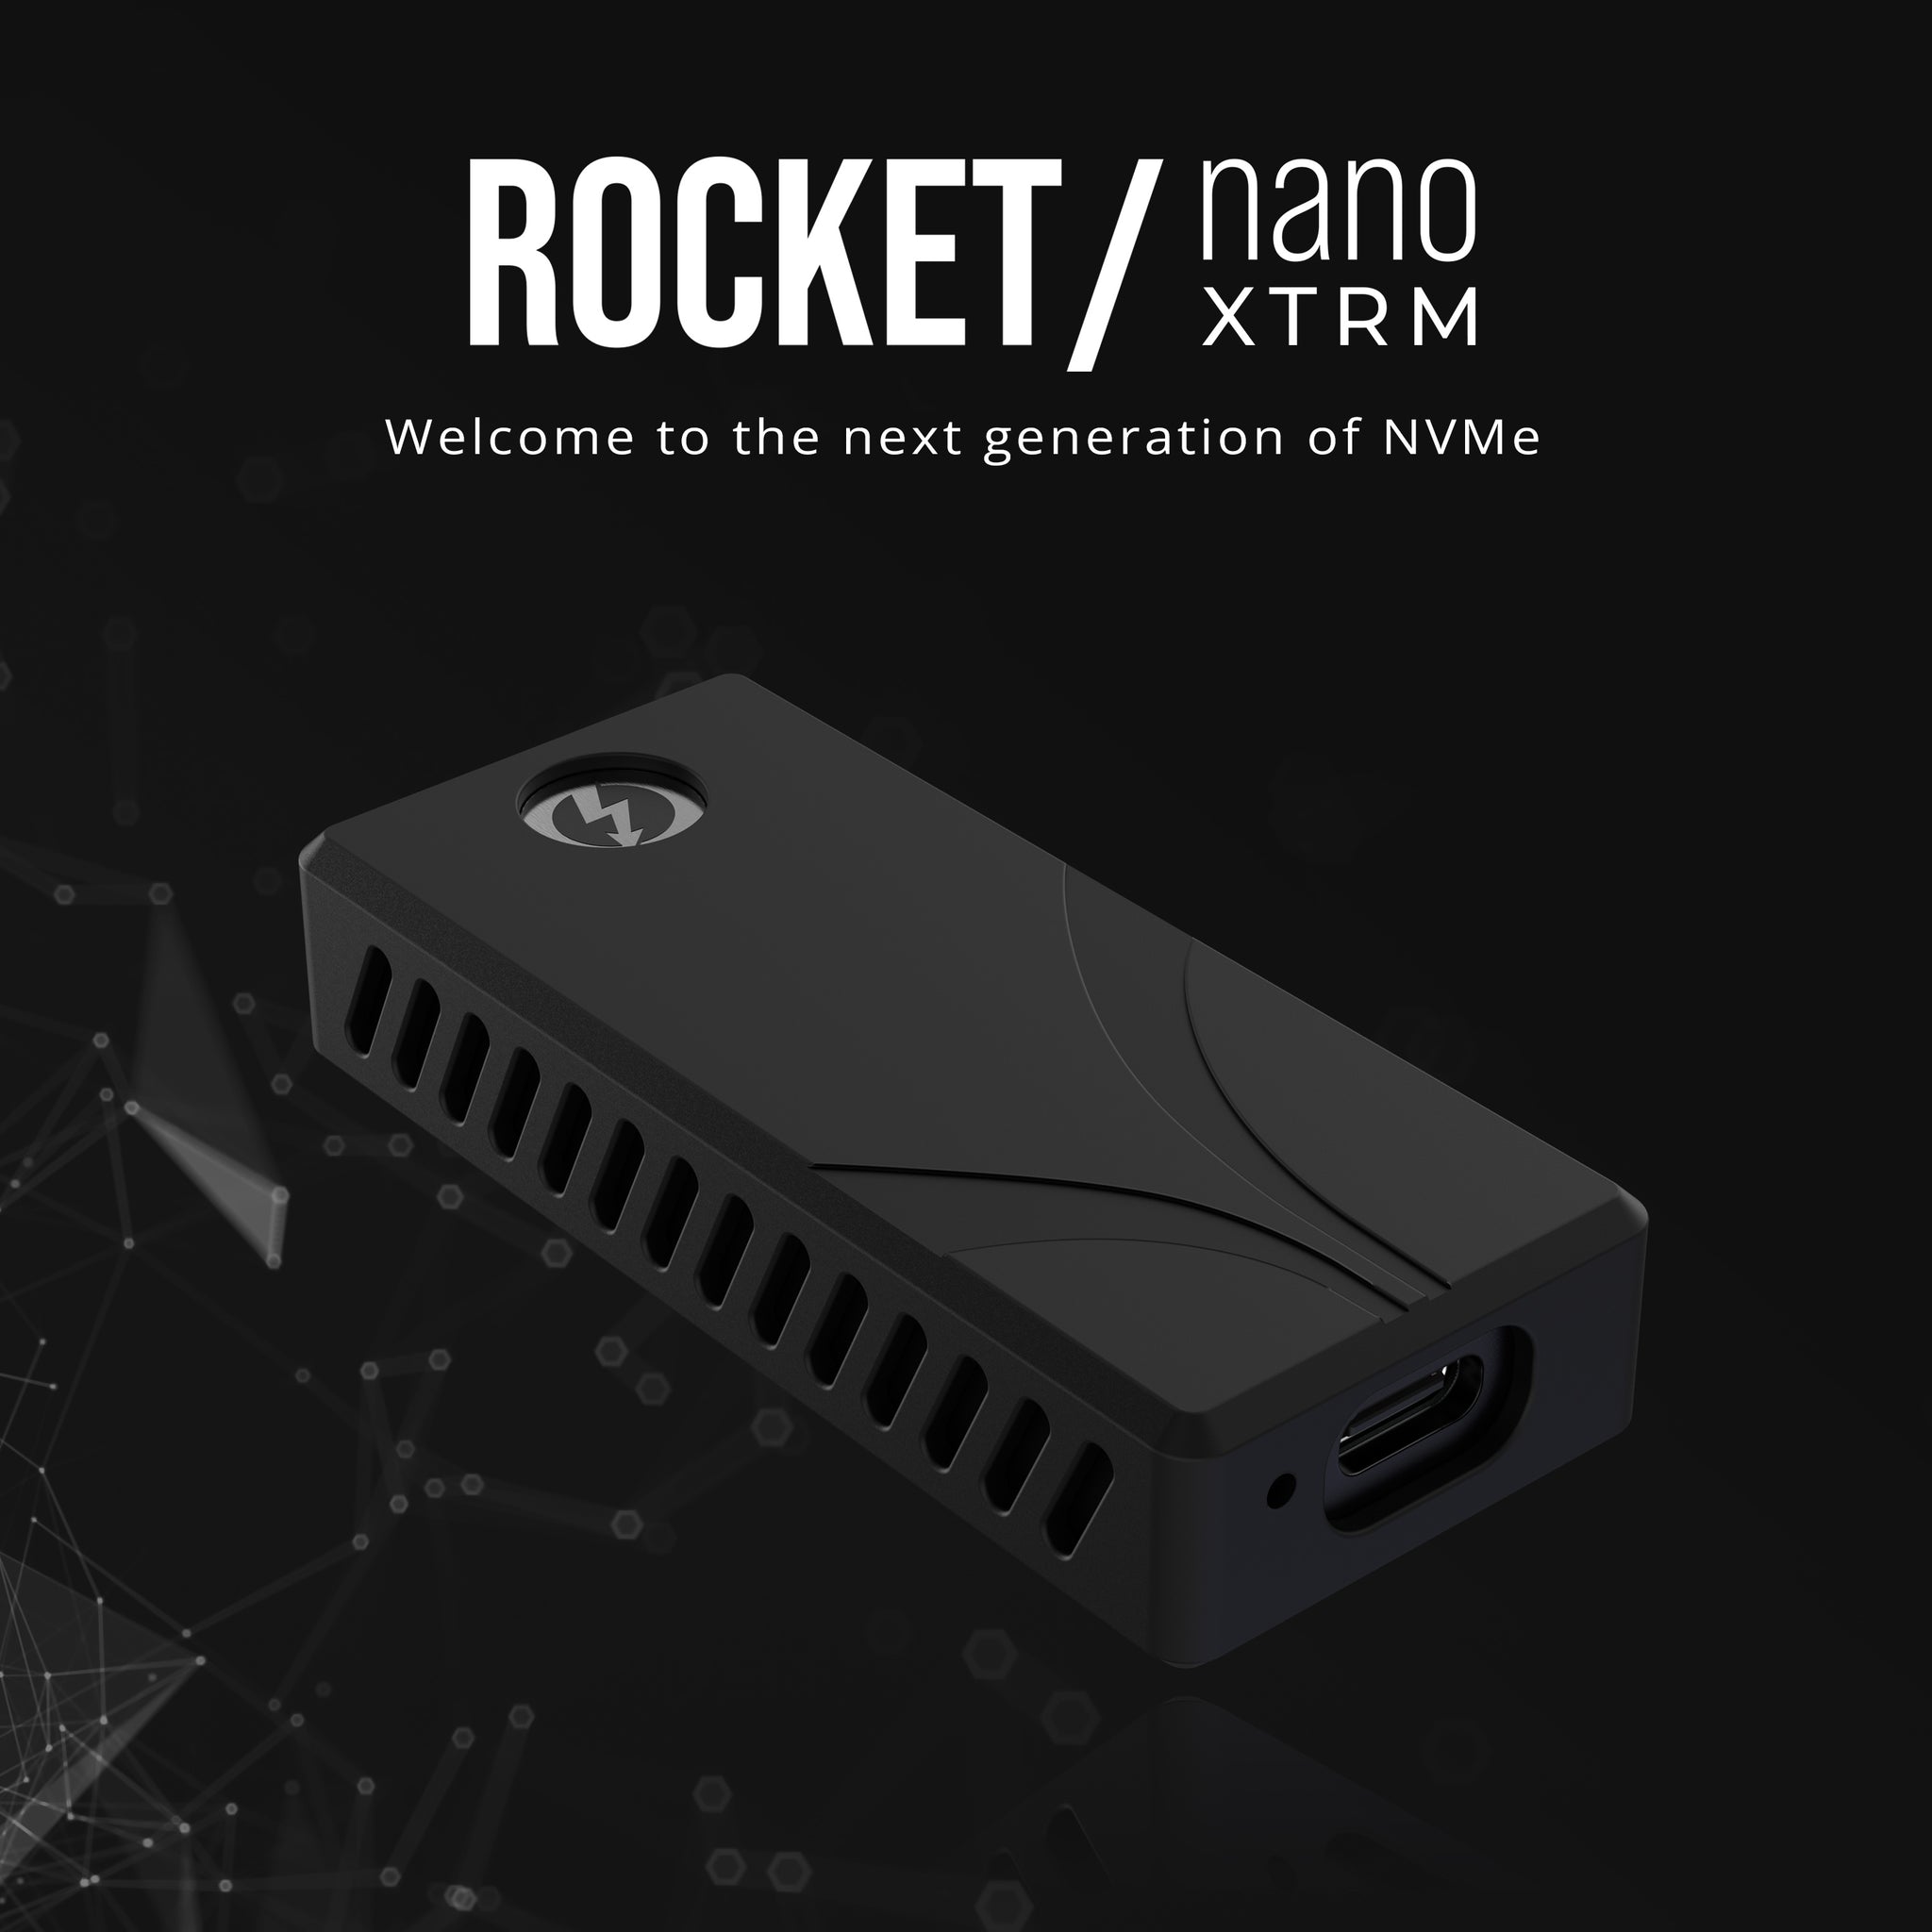 Rocket nano XTRM Thunderbolt 3 External SSD - Sabrent